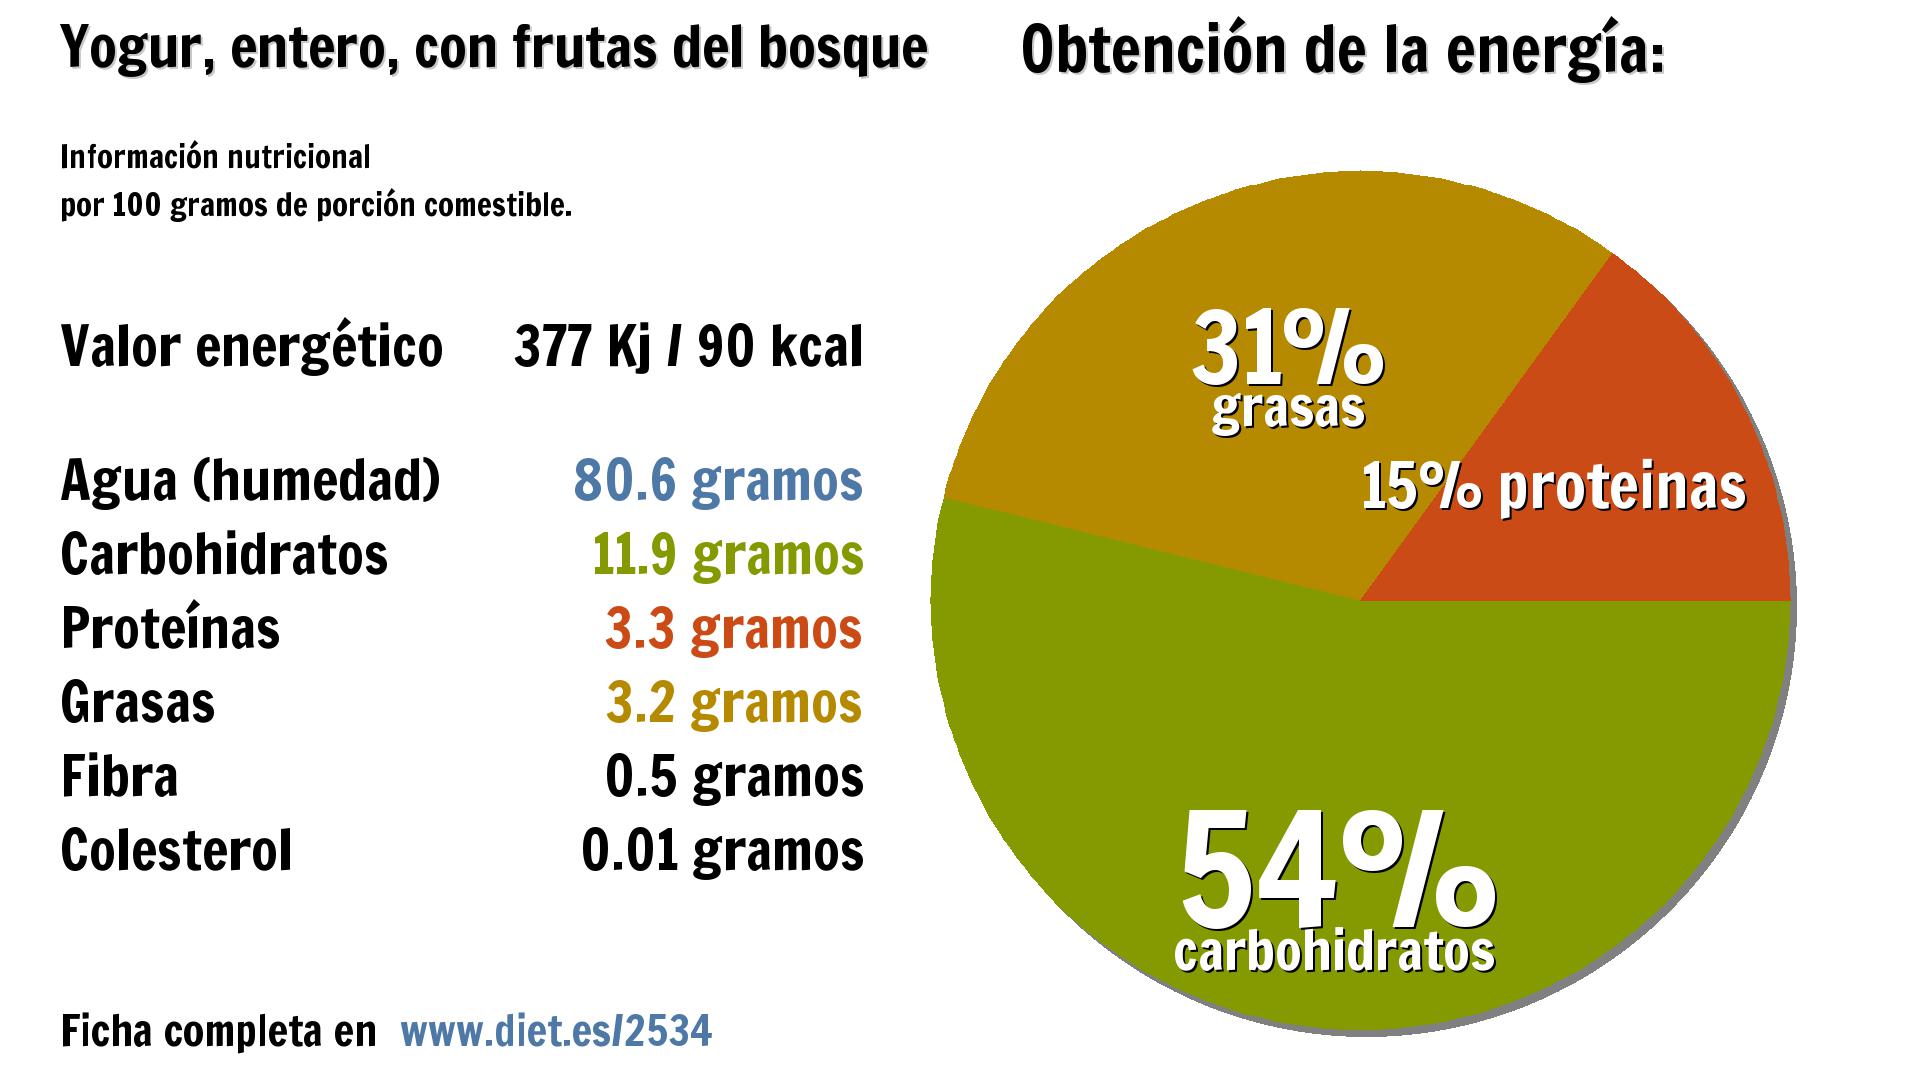 Yogur, entero, con frutas del bosque: energía 377 Kj, agua 81 g., carbohidratos 12 g., proteínas 3 g., grasas 3 g. y fibra 1 g.